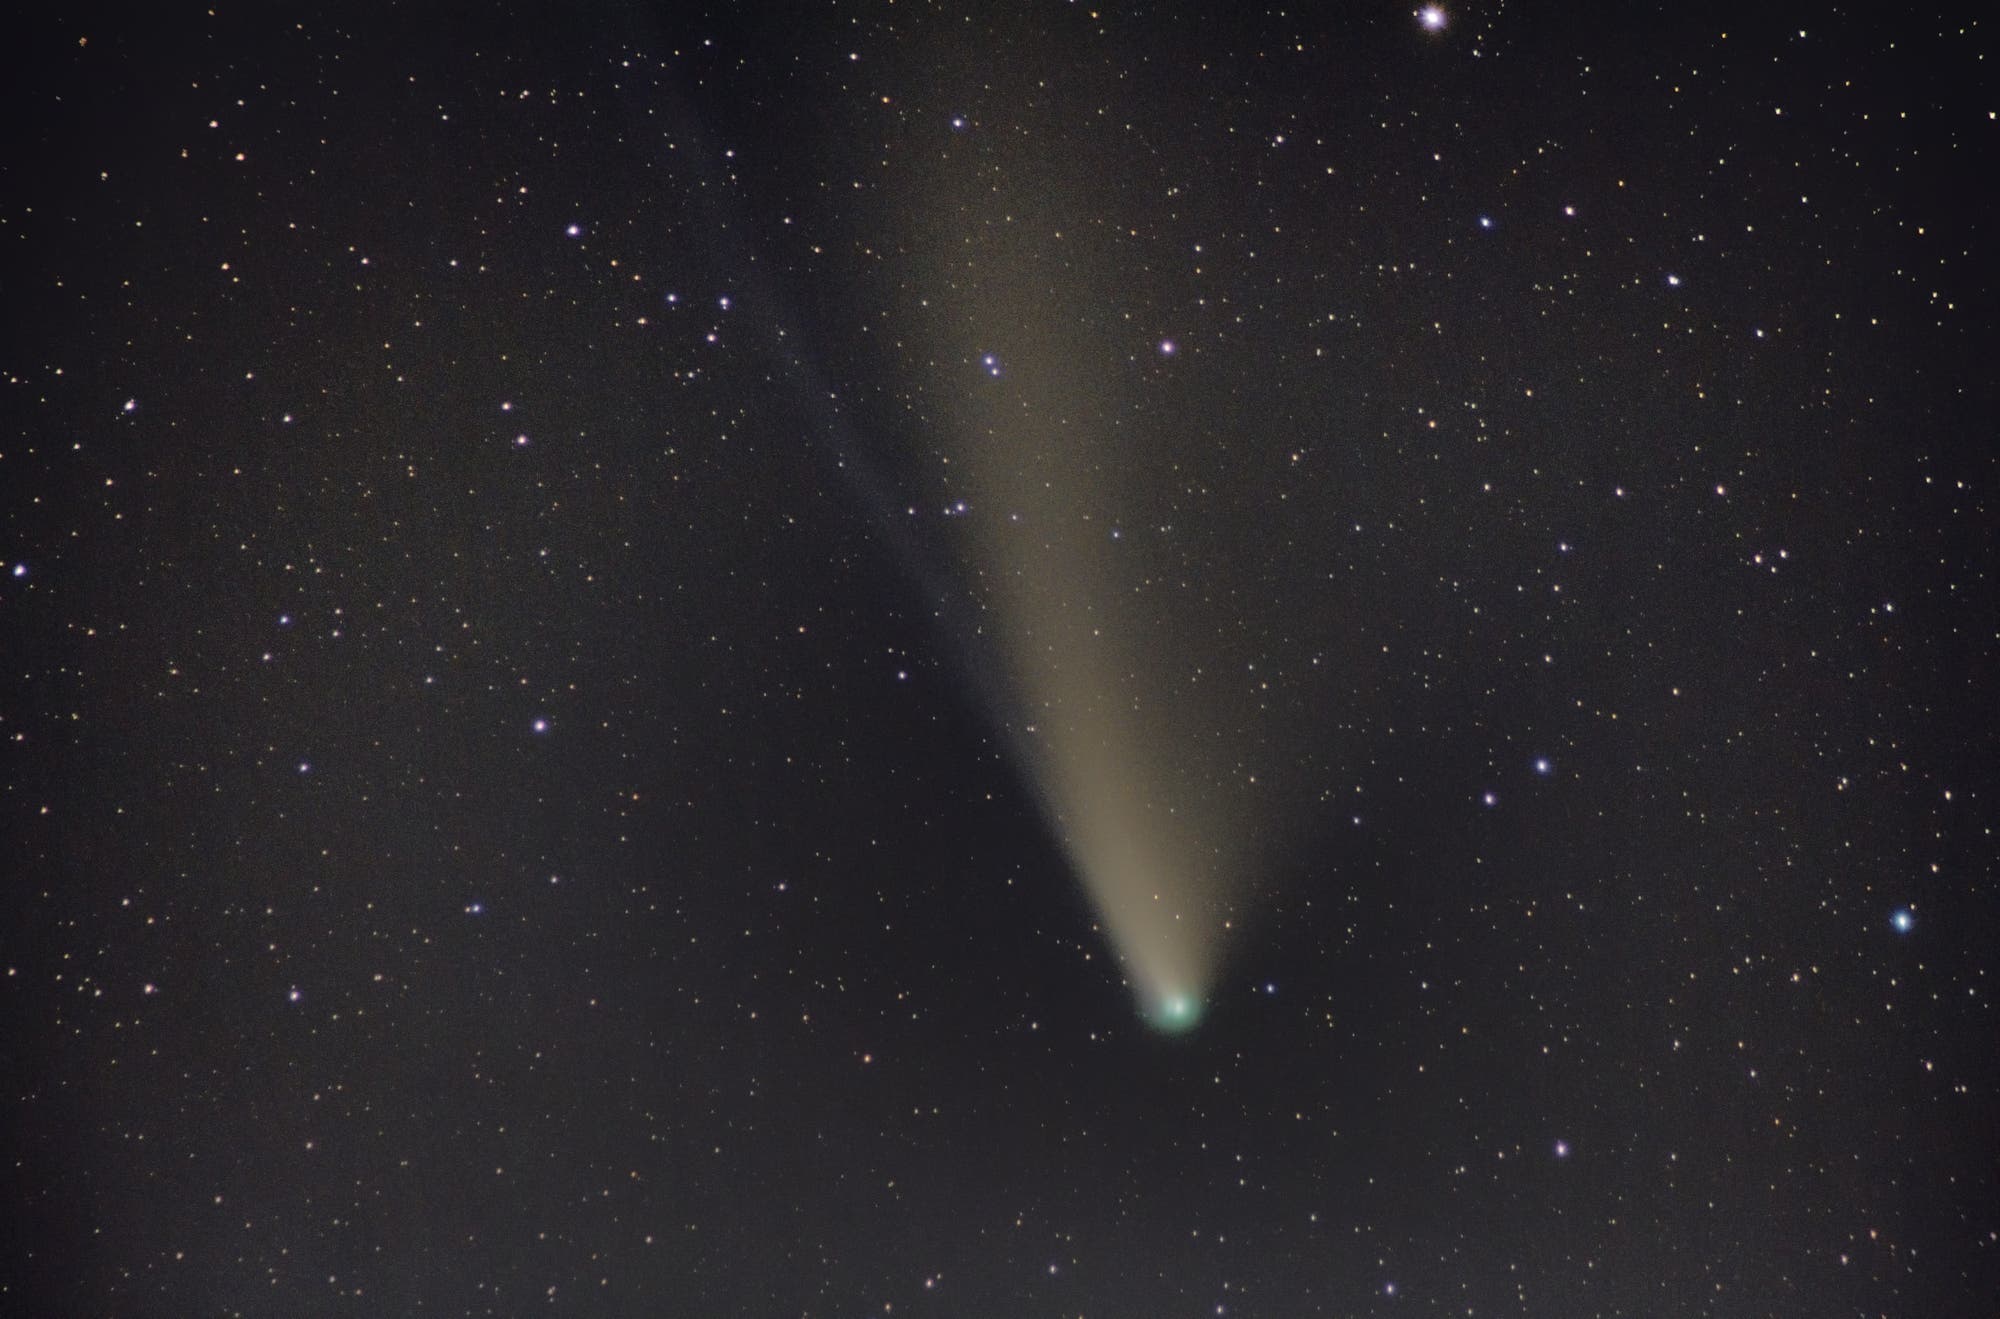 Komet C/2020 F3 (Neowise) vom 25. Juli 2020 als Komposit zweier Belichtungsreihen